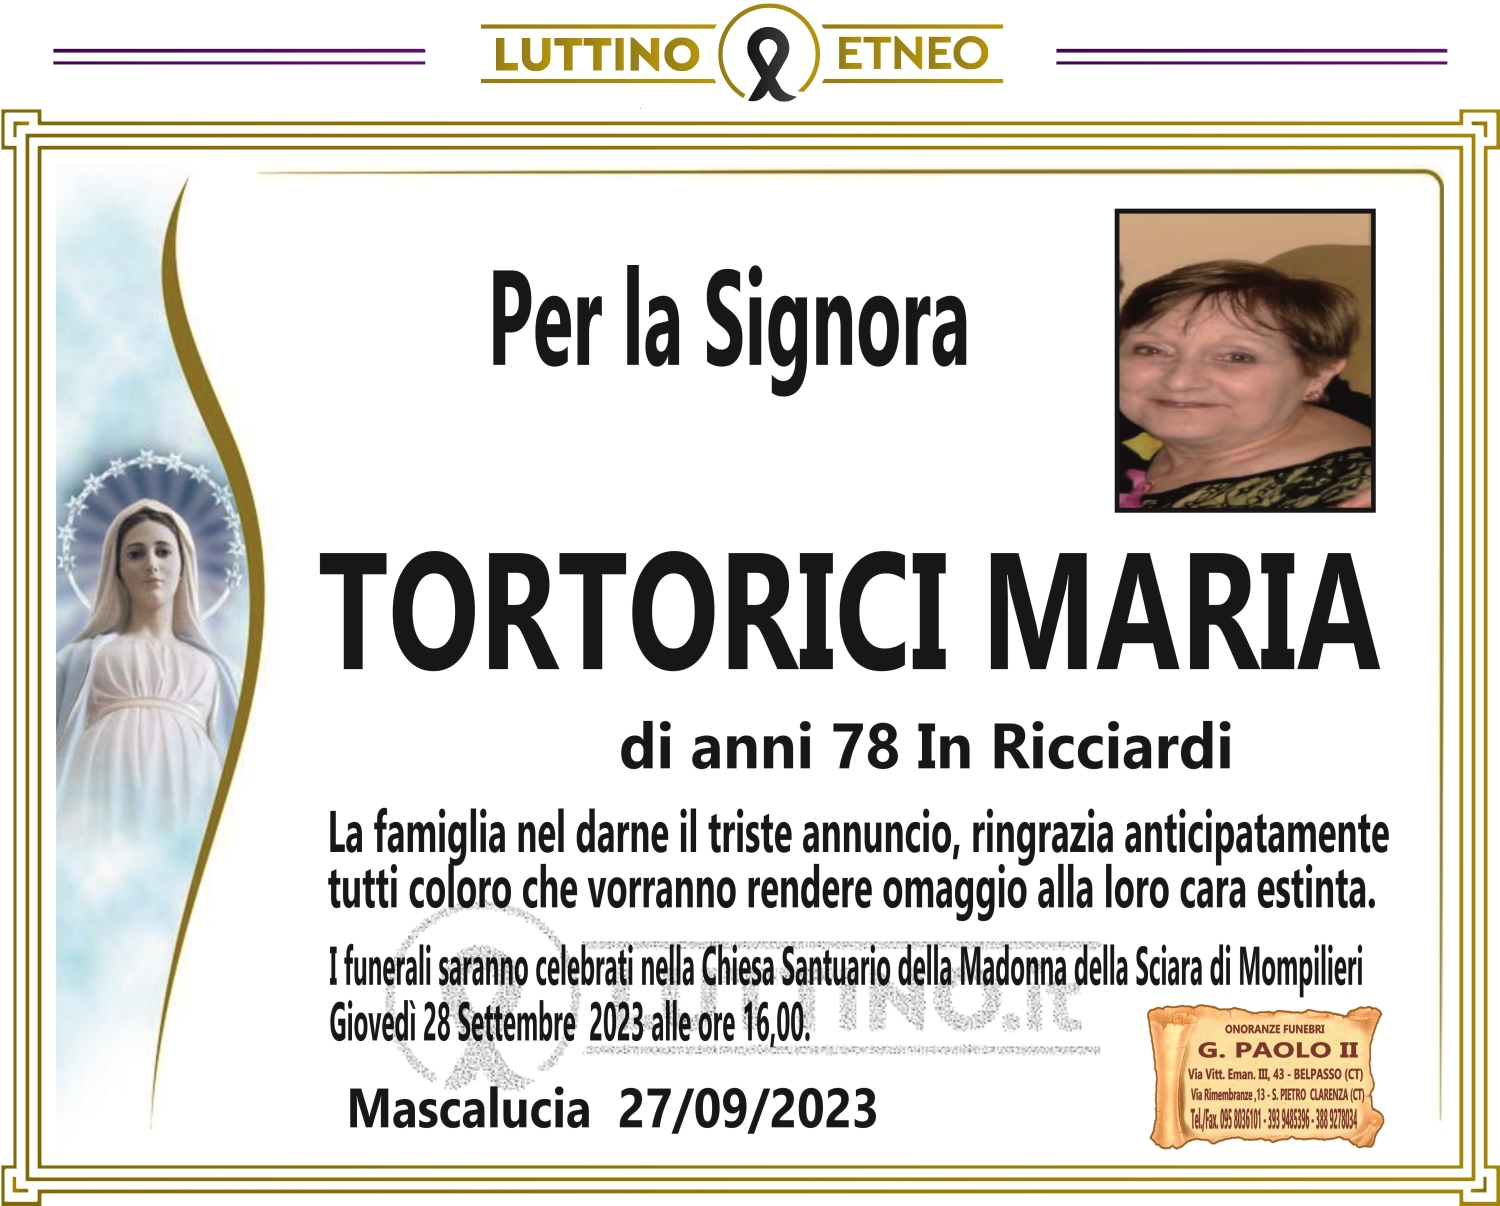 Maria Tortorici